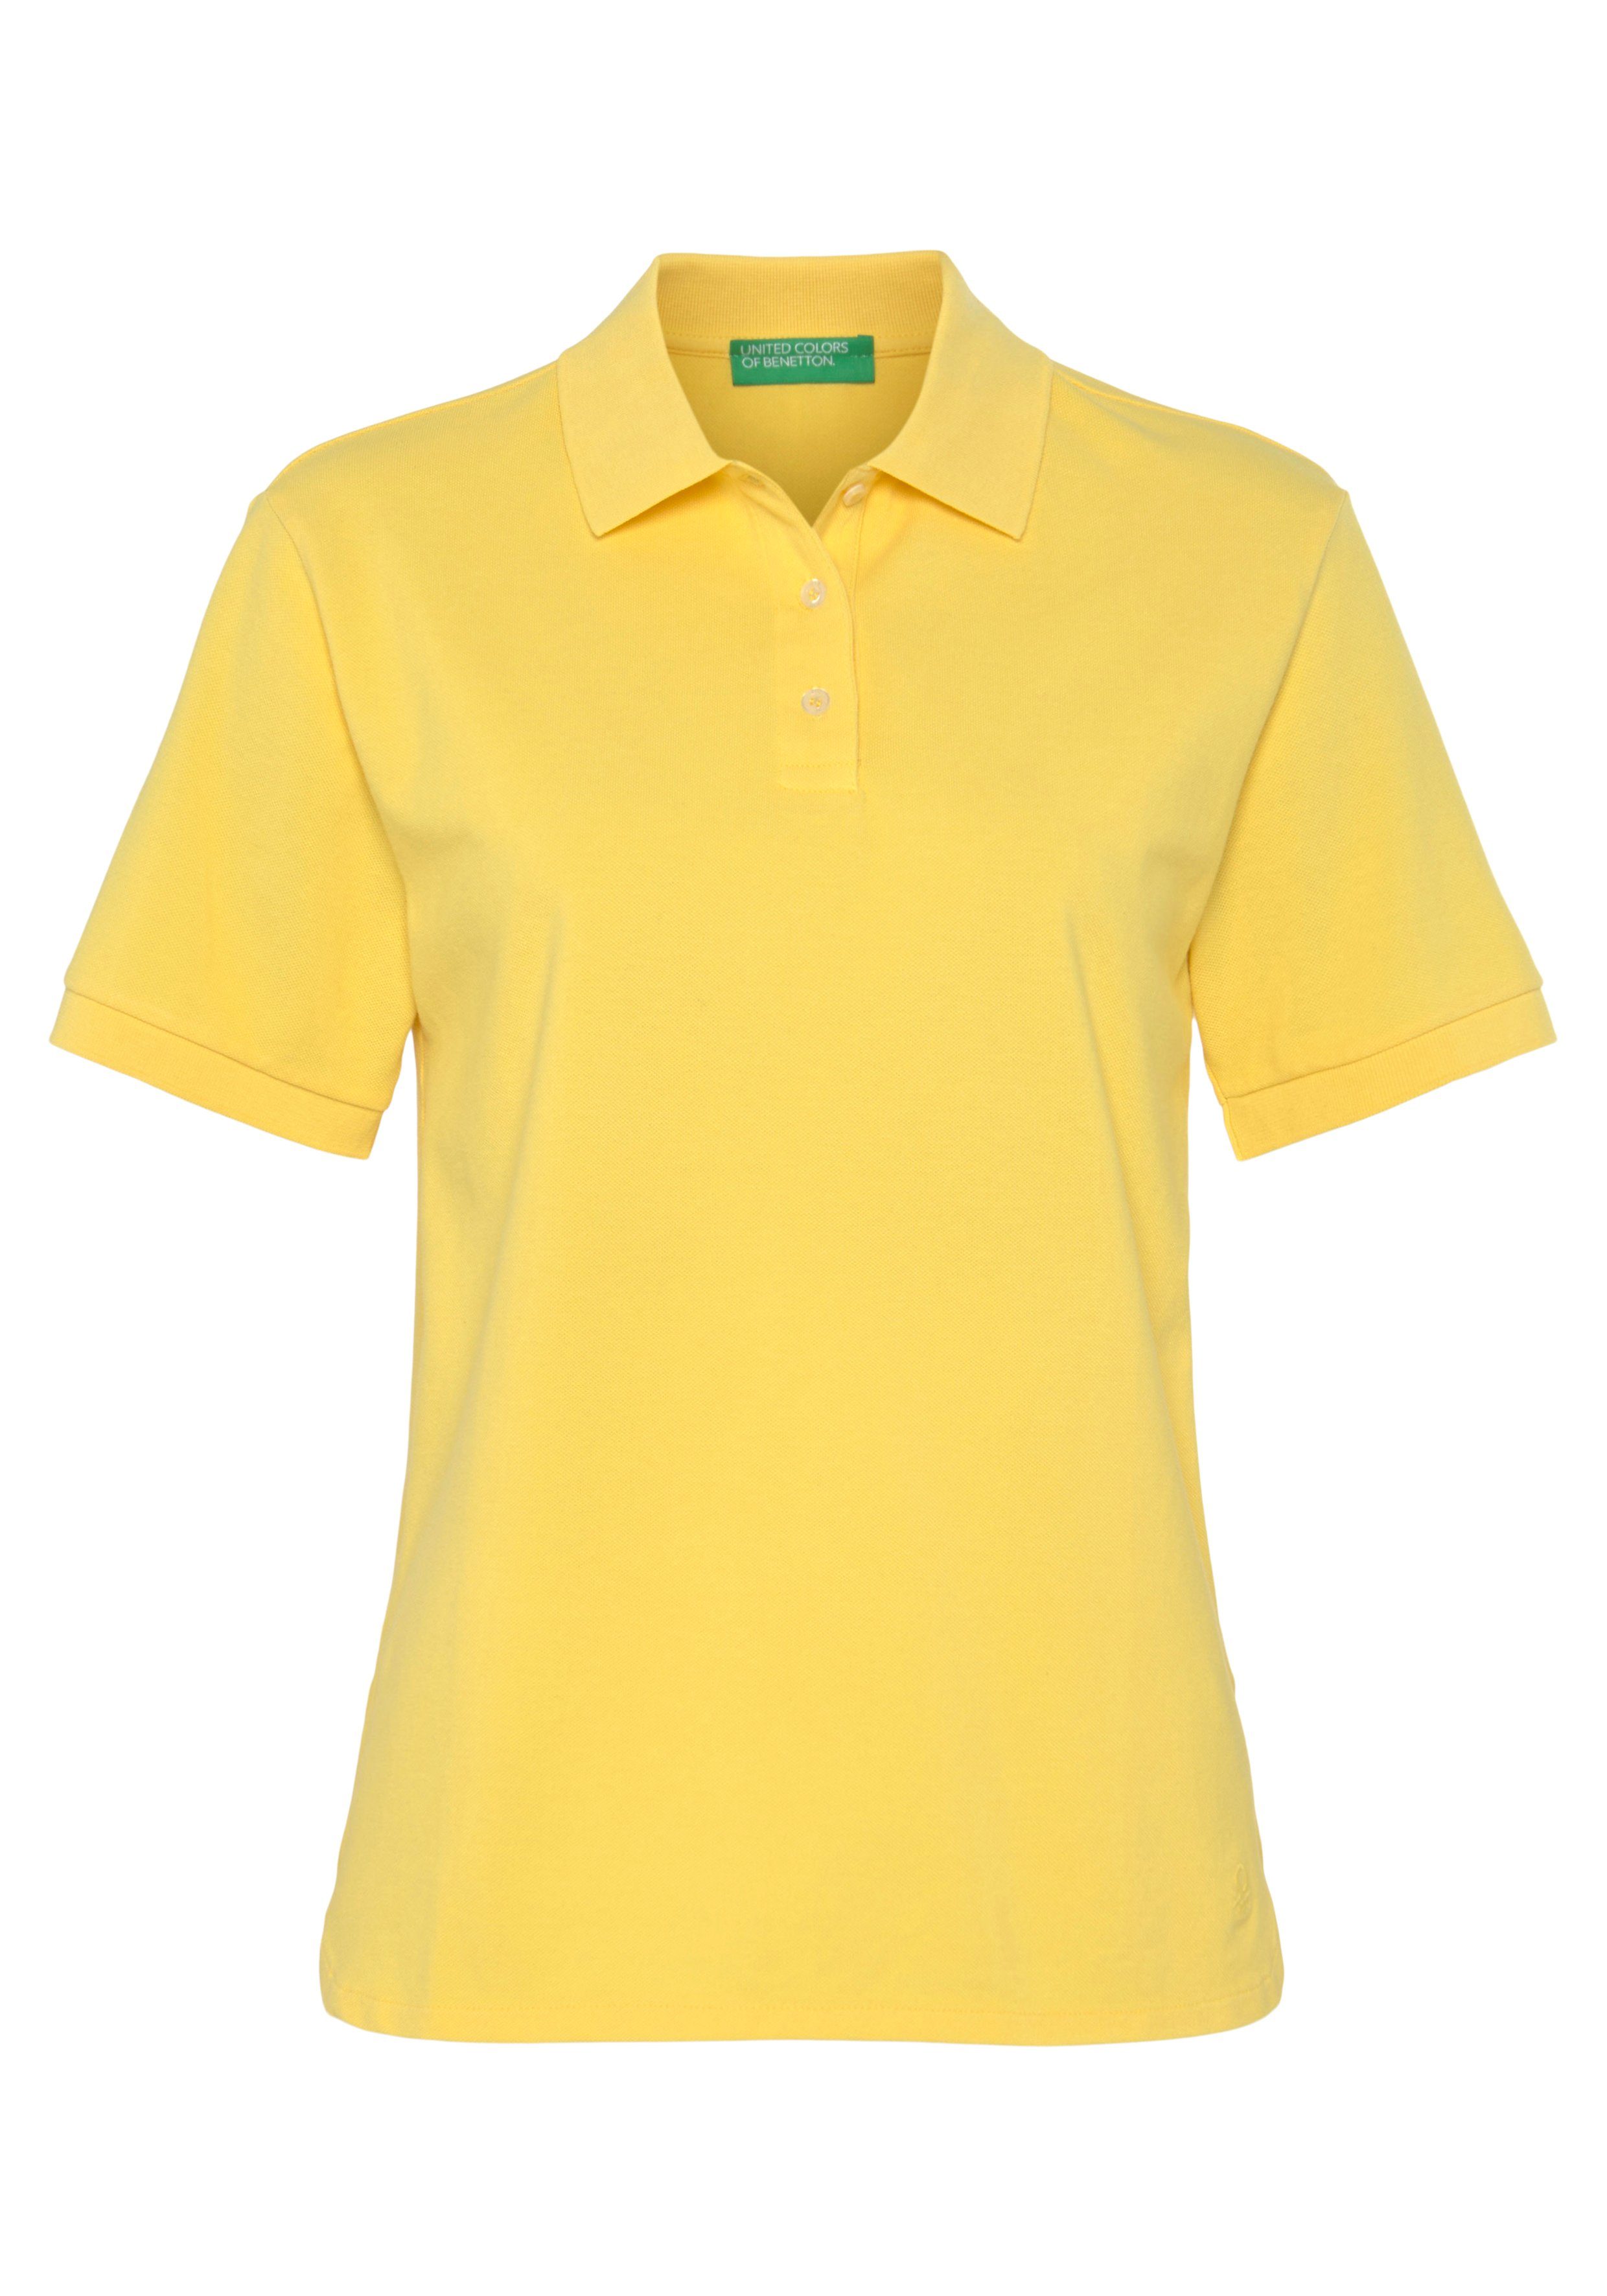 Benetton Knöpfen of Colors gelb Poloshirt perlmuttfarbenen United mit